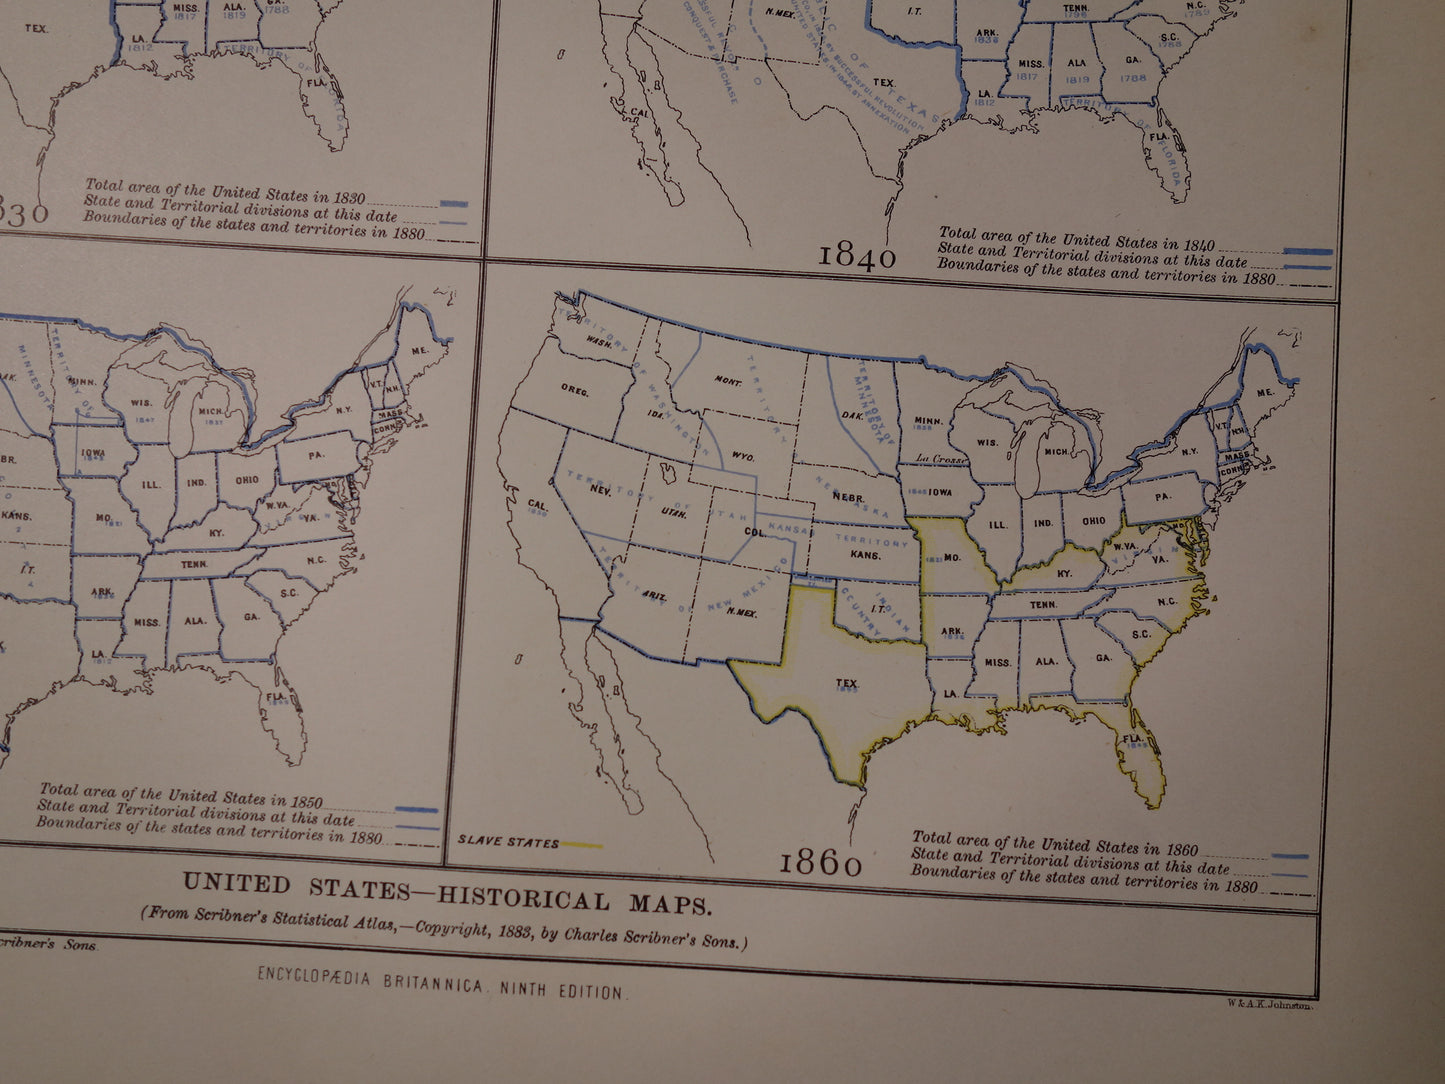 VERENIGDE STATEN Antieke kaarten over de ontstaansgeschiedenis van de VS 1888 originele oude geschiedenis print/poster ontstaan en uitbreiding VS tussen 1776 en 1860VS